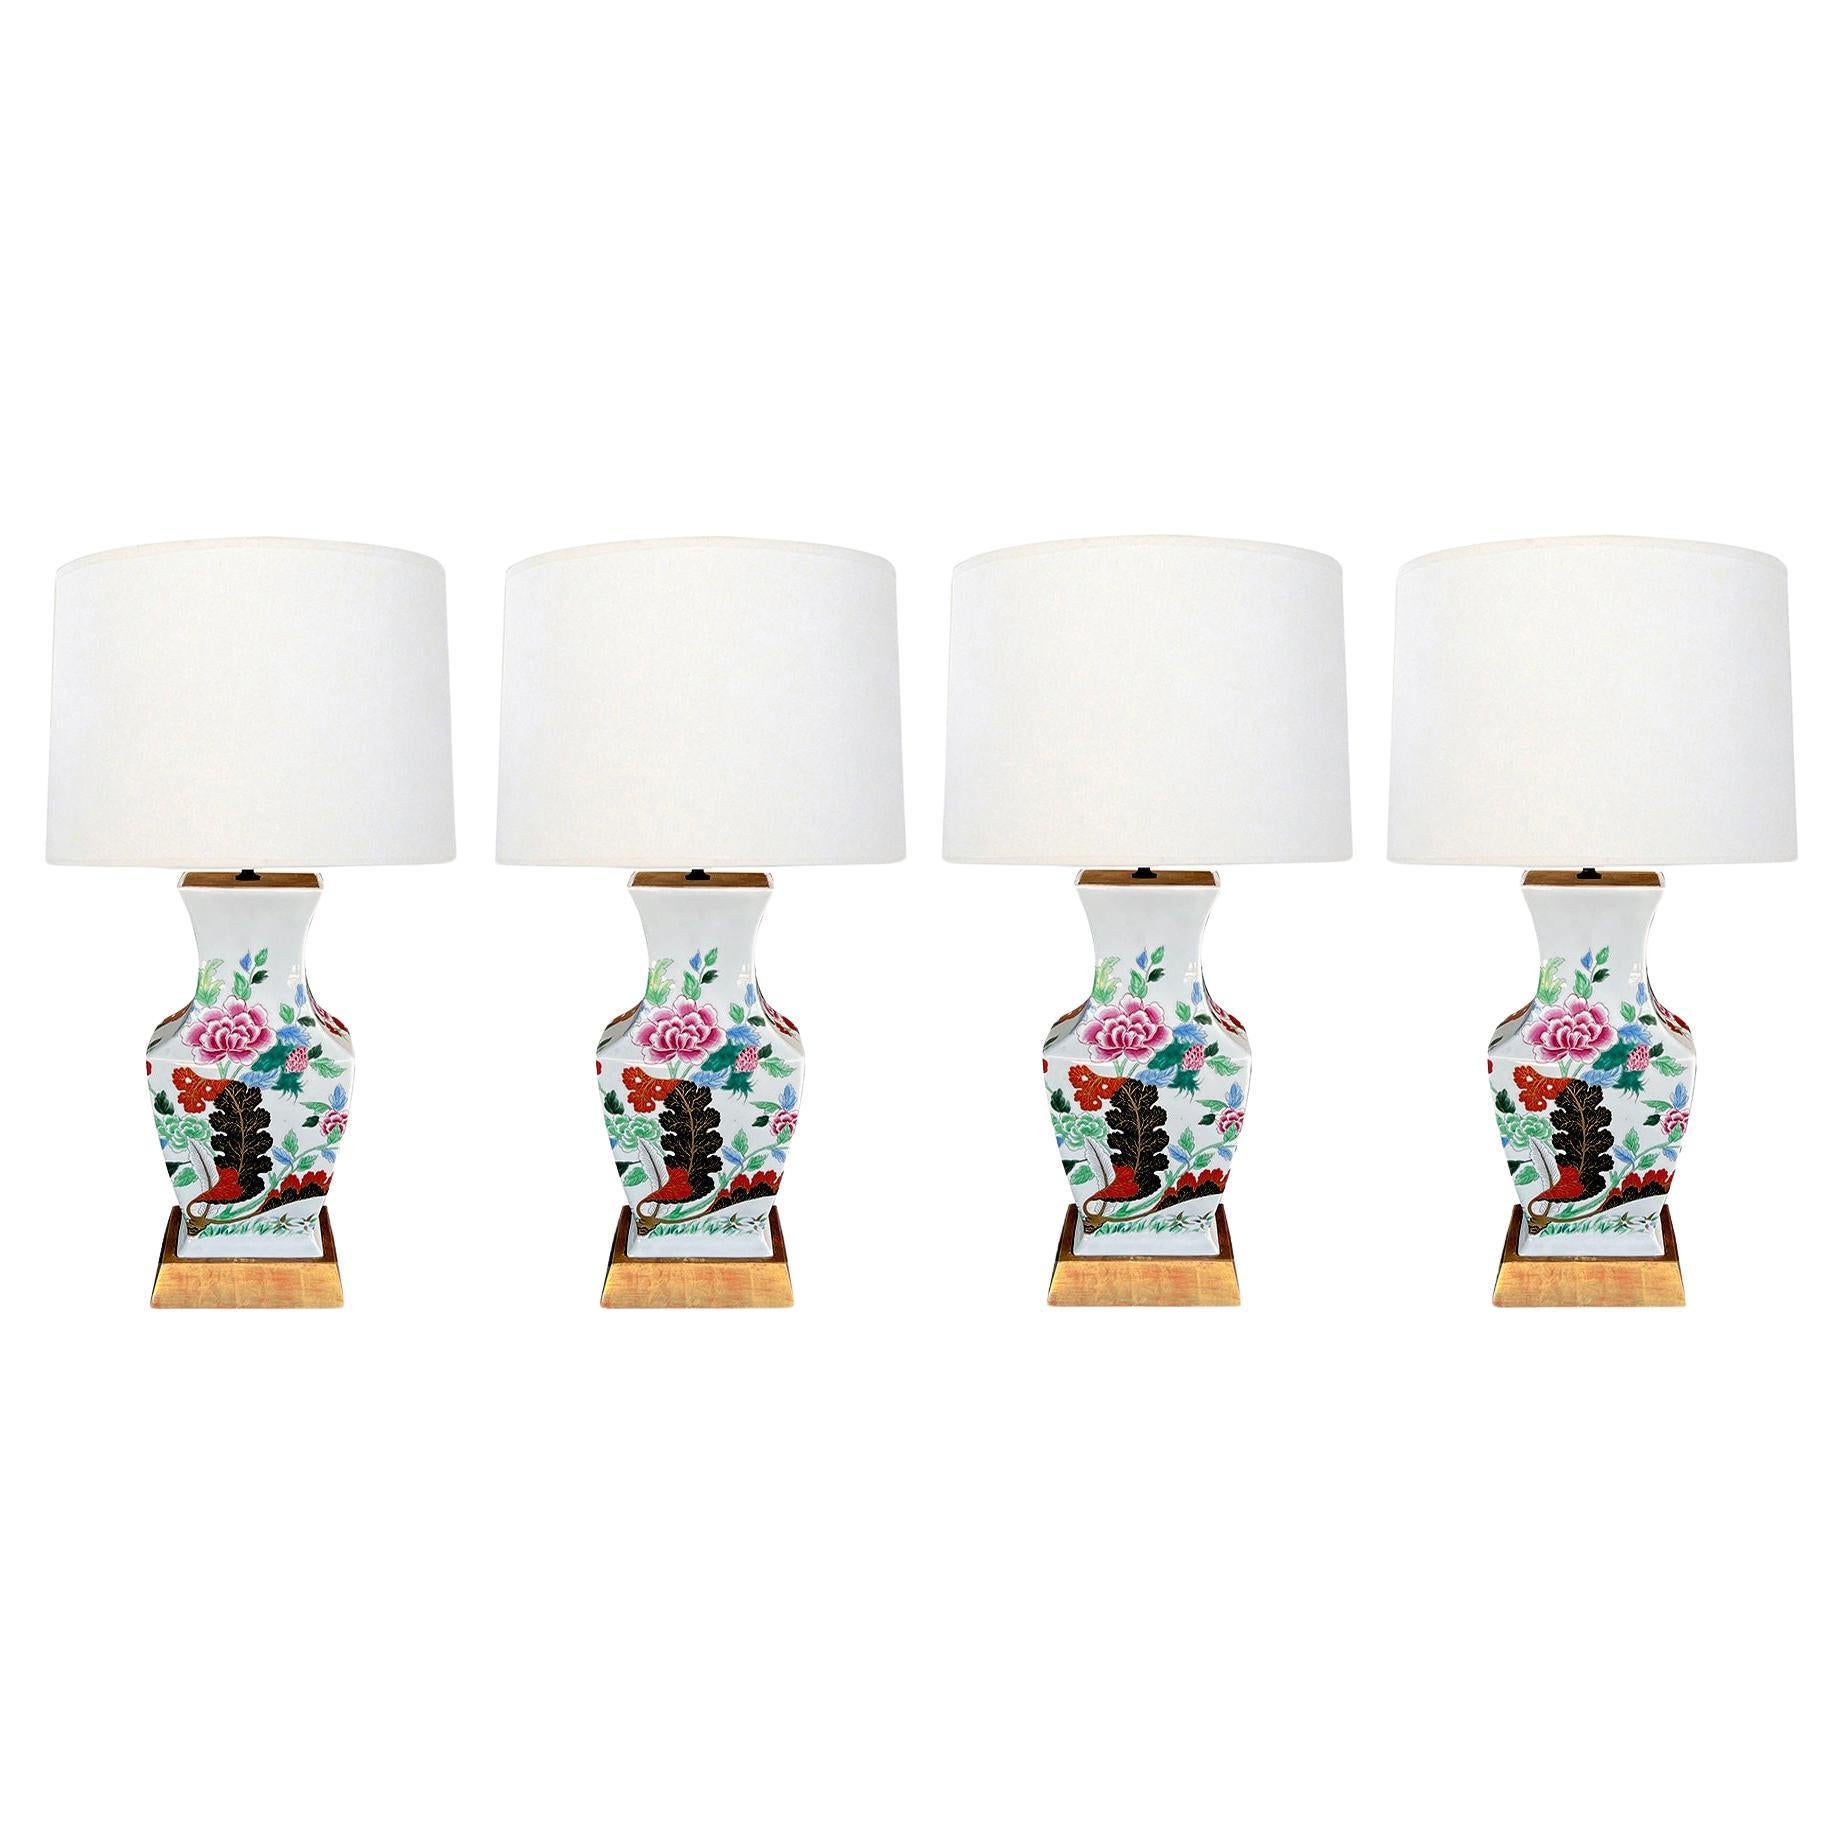 Auffälliger Satz von vier portugiesischen Vasen im Imari-Stil, jetzt als Lampen montiert